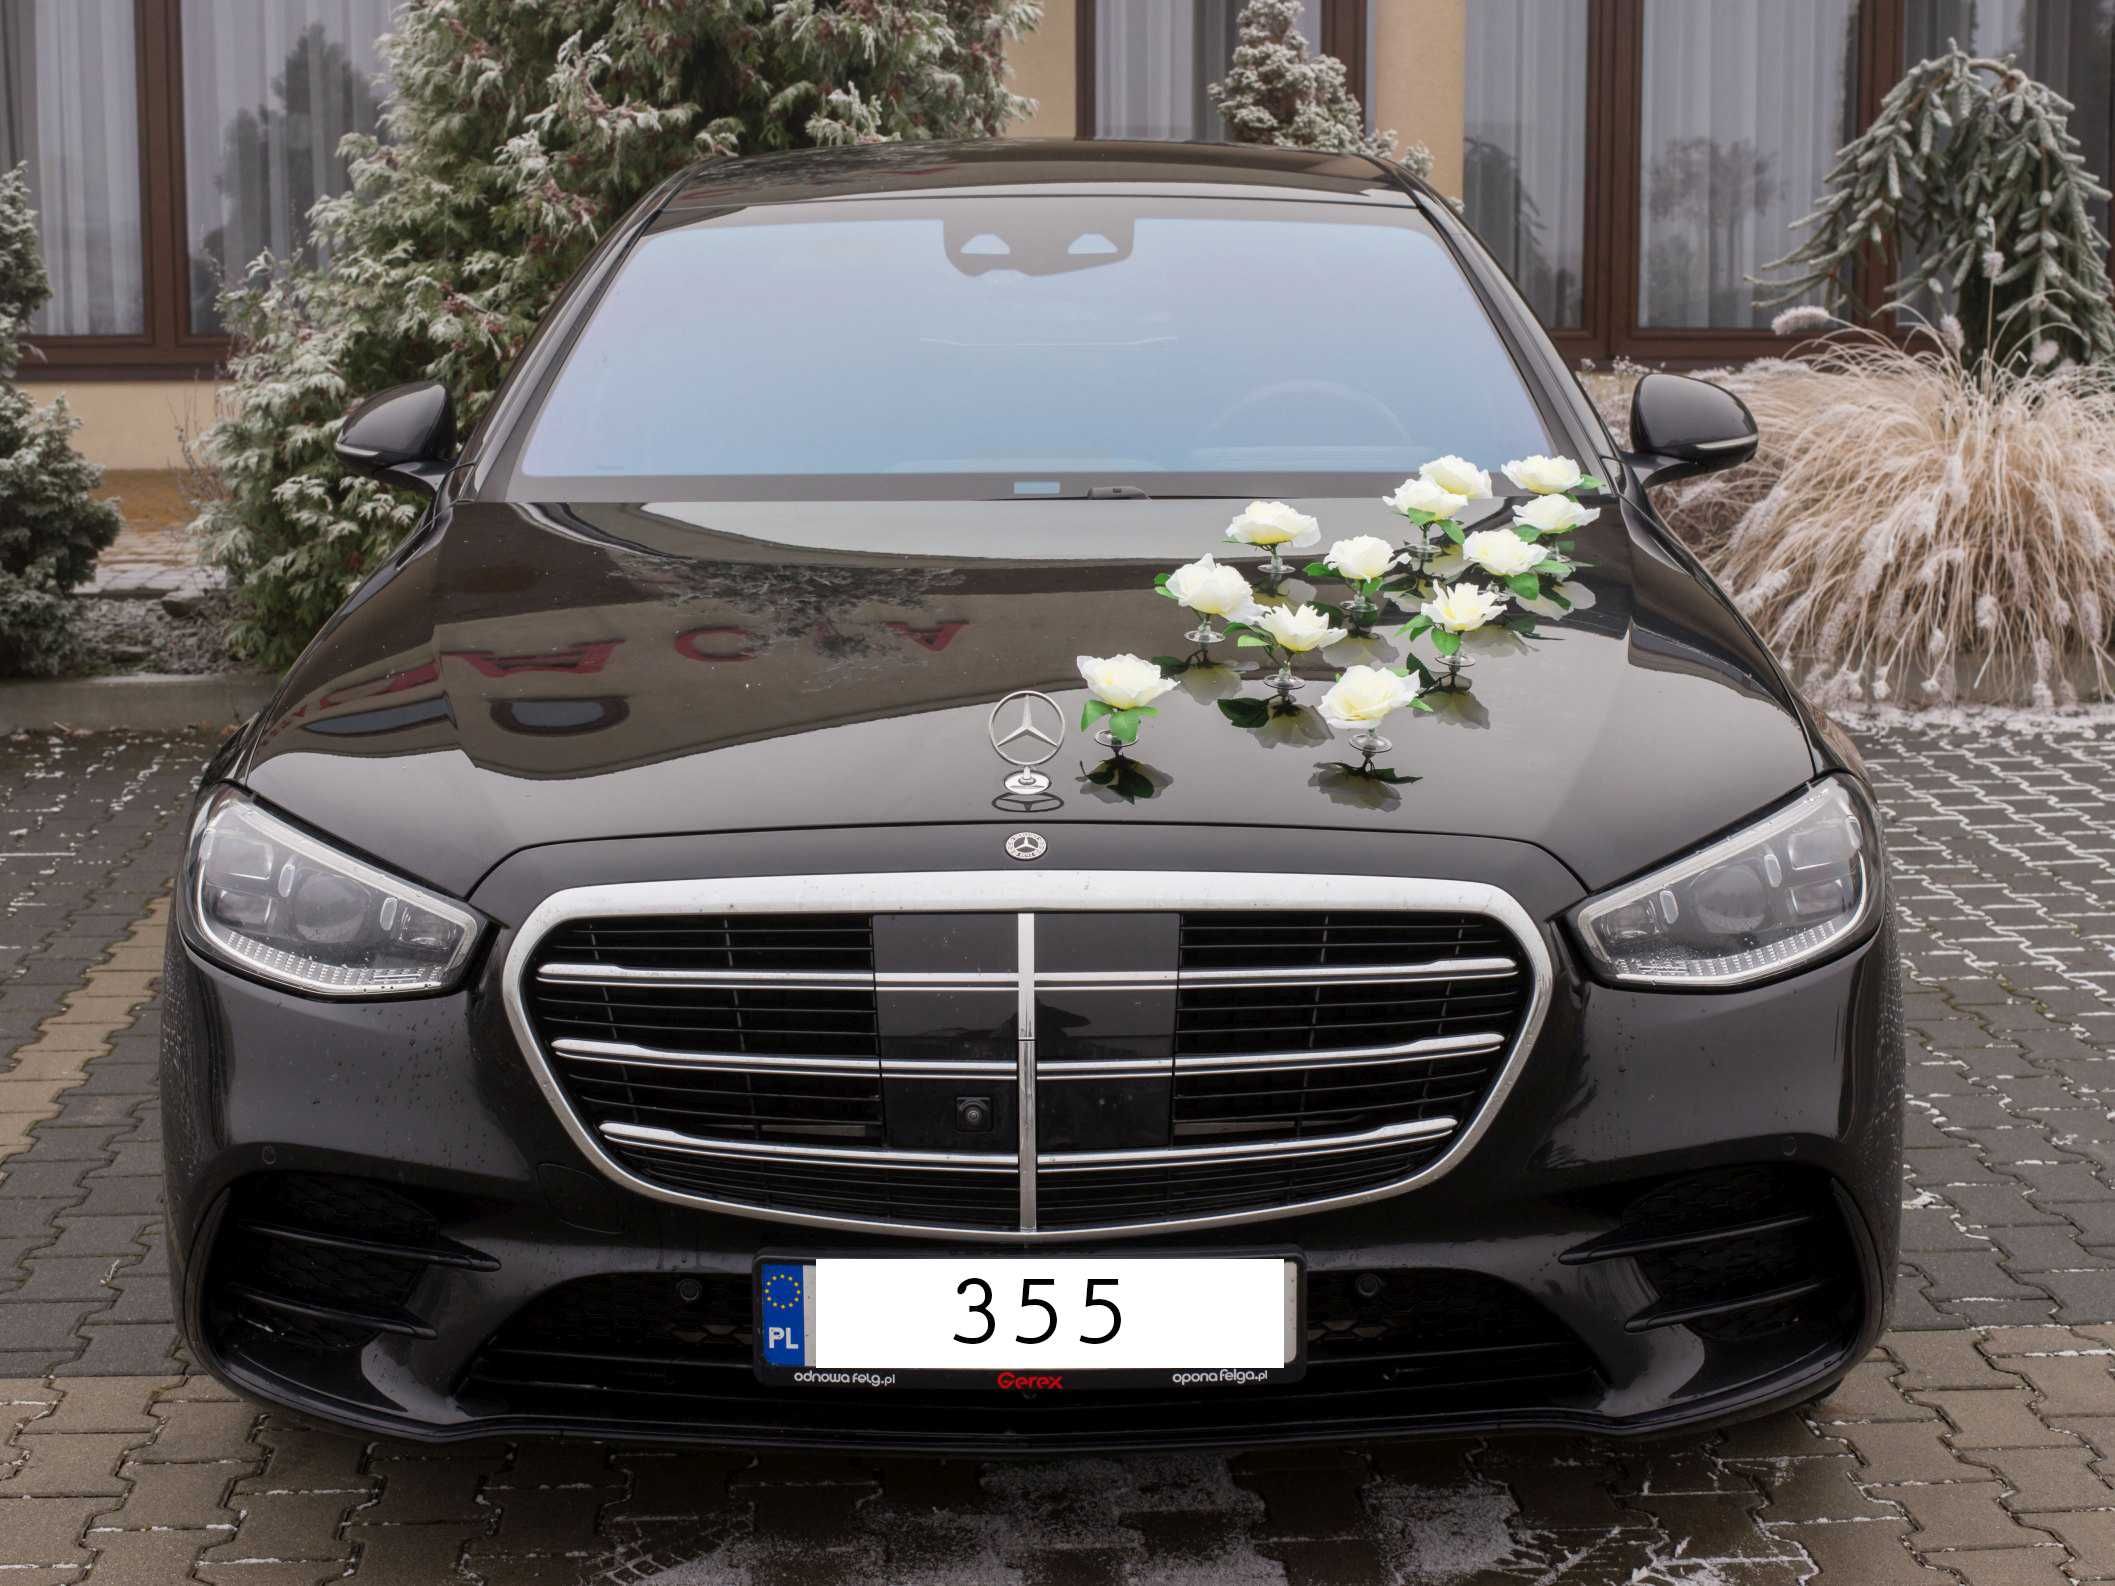 KREMOWE RÓŻE stroiki kwiatowe na samochód do ślubu dekoracja  355